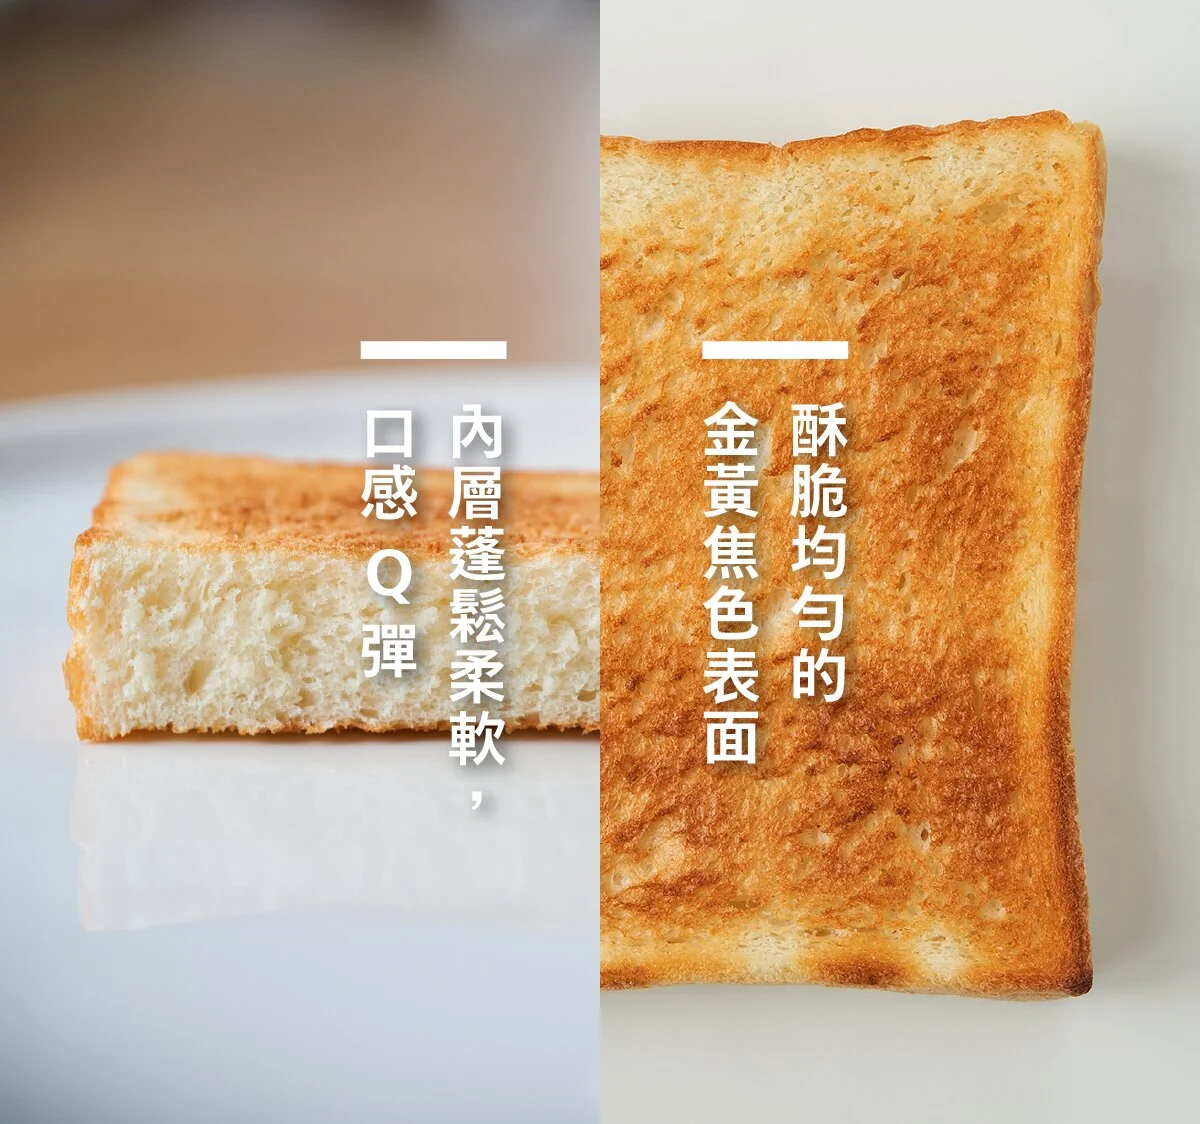 日本絕美賴床神器，早晨多睡不再是奢求～魔法瞬熱烤麵包機開箱看